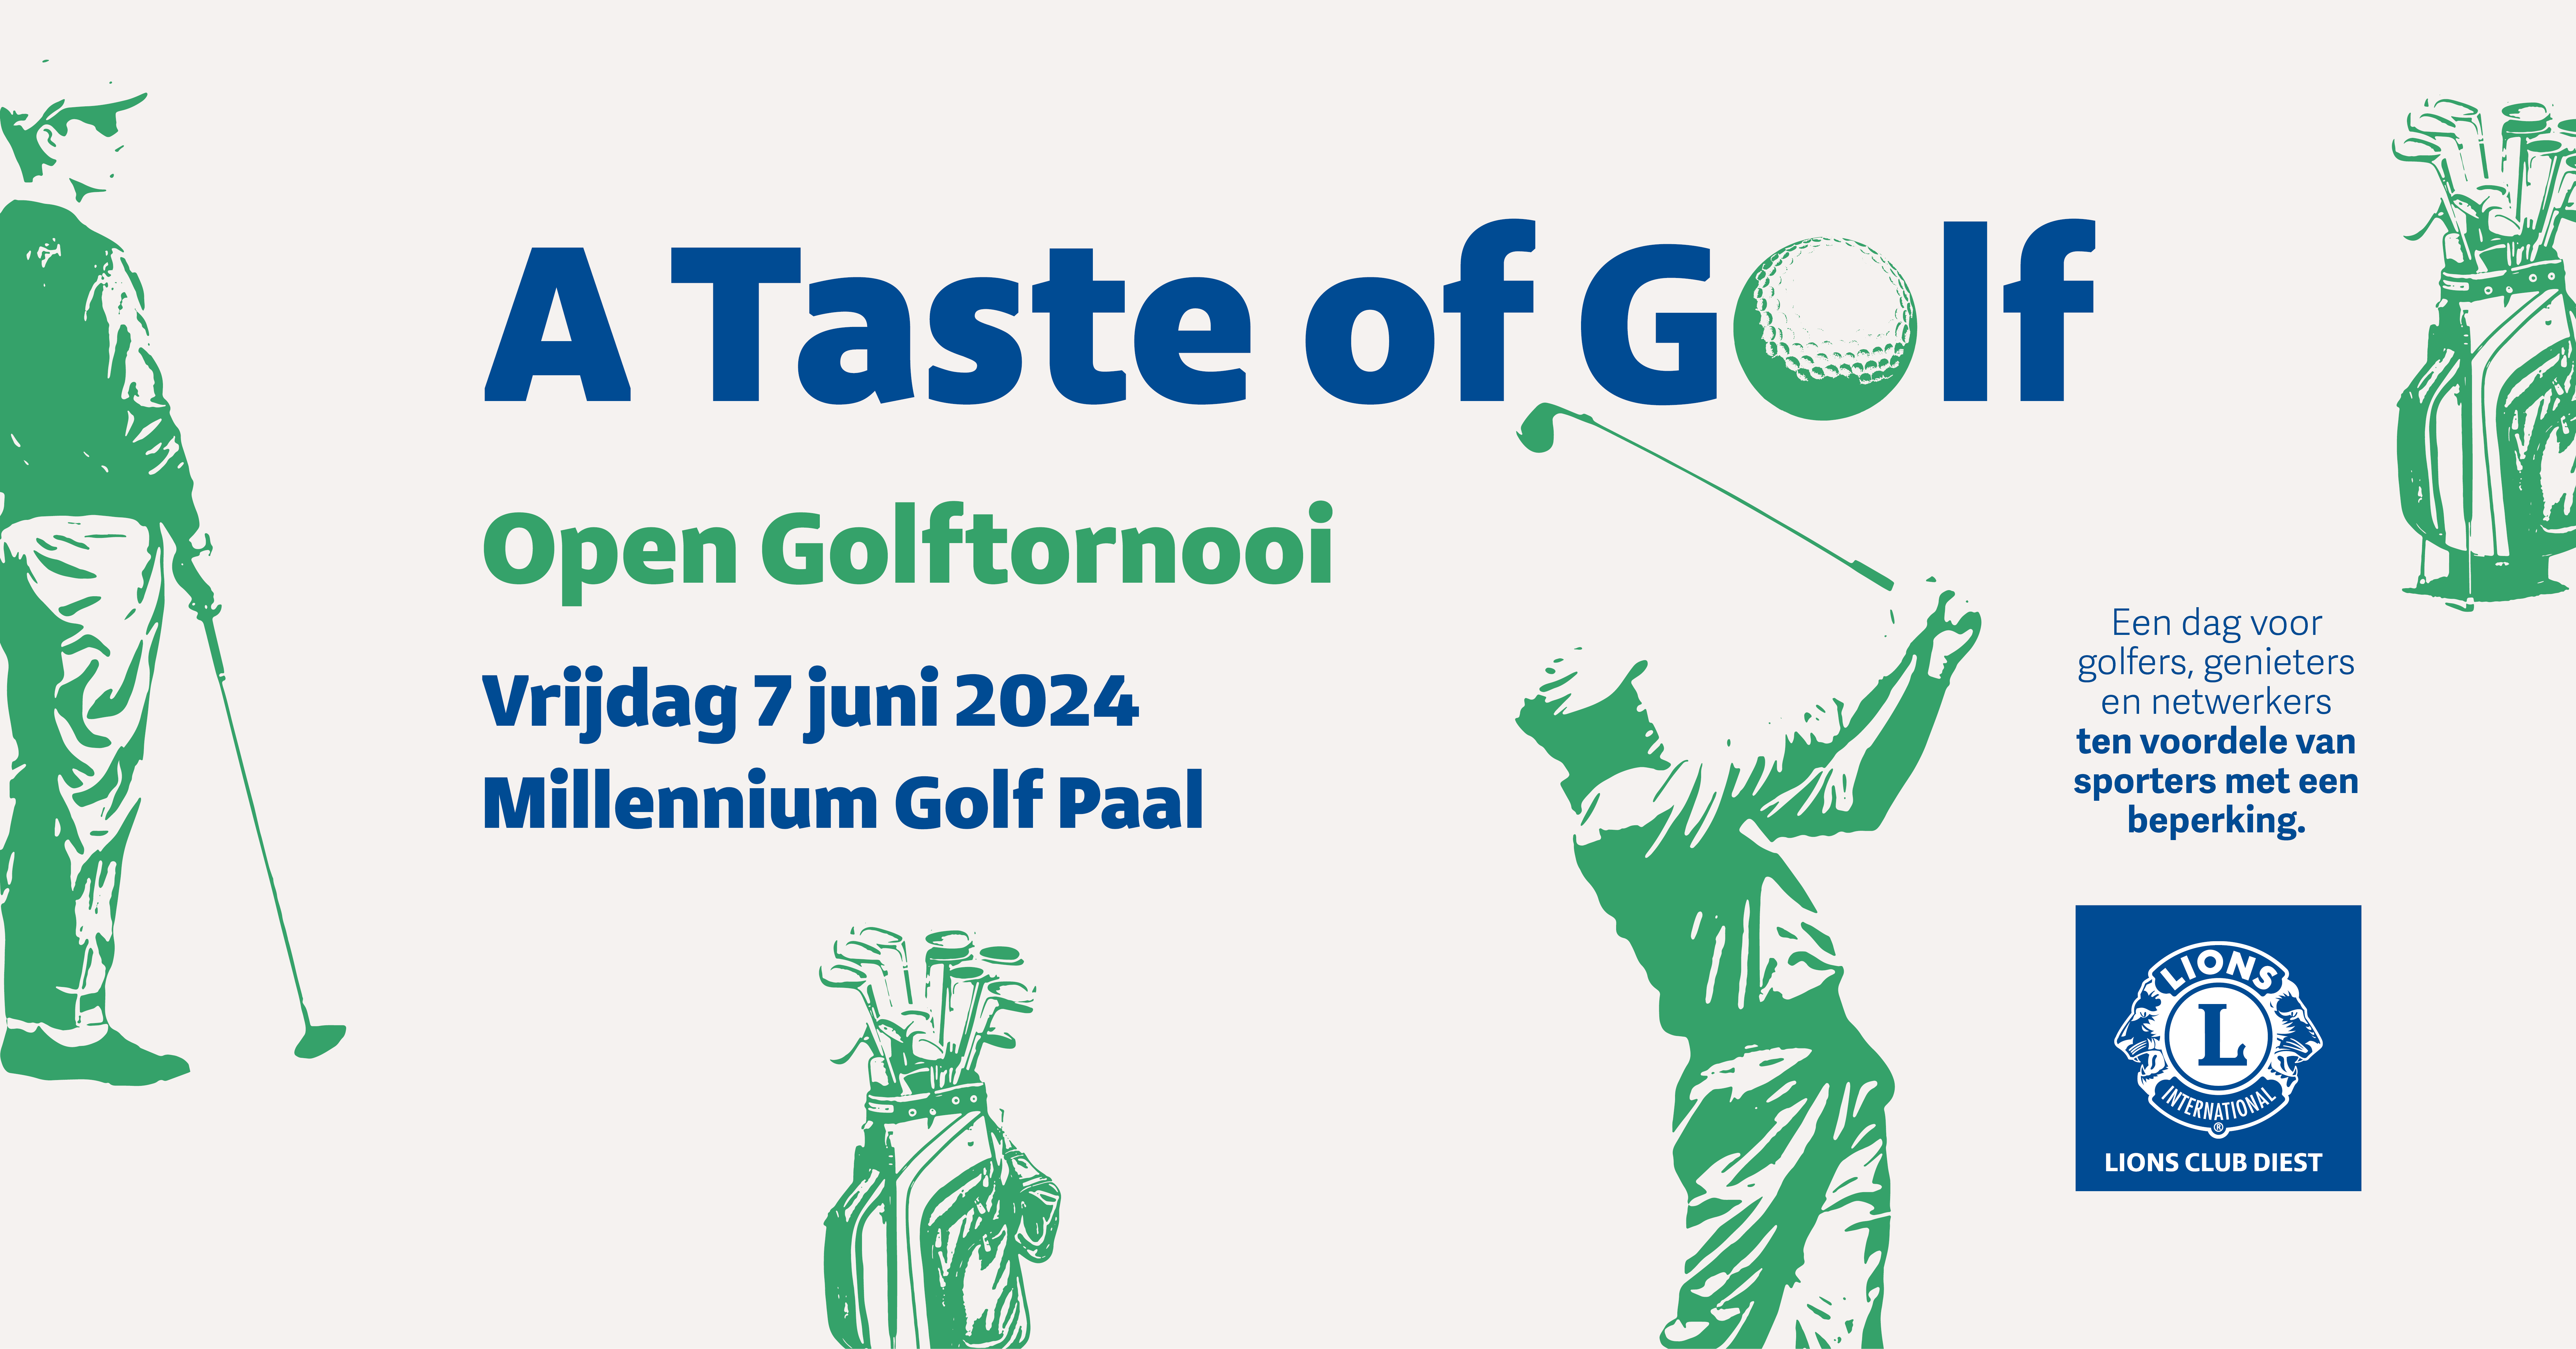 Open Golftornooi
Vrijdag 7 juni 2024
Een dag voor golfers, genieters en netwerkers ten voordele van sporters met een beperking.
